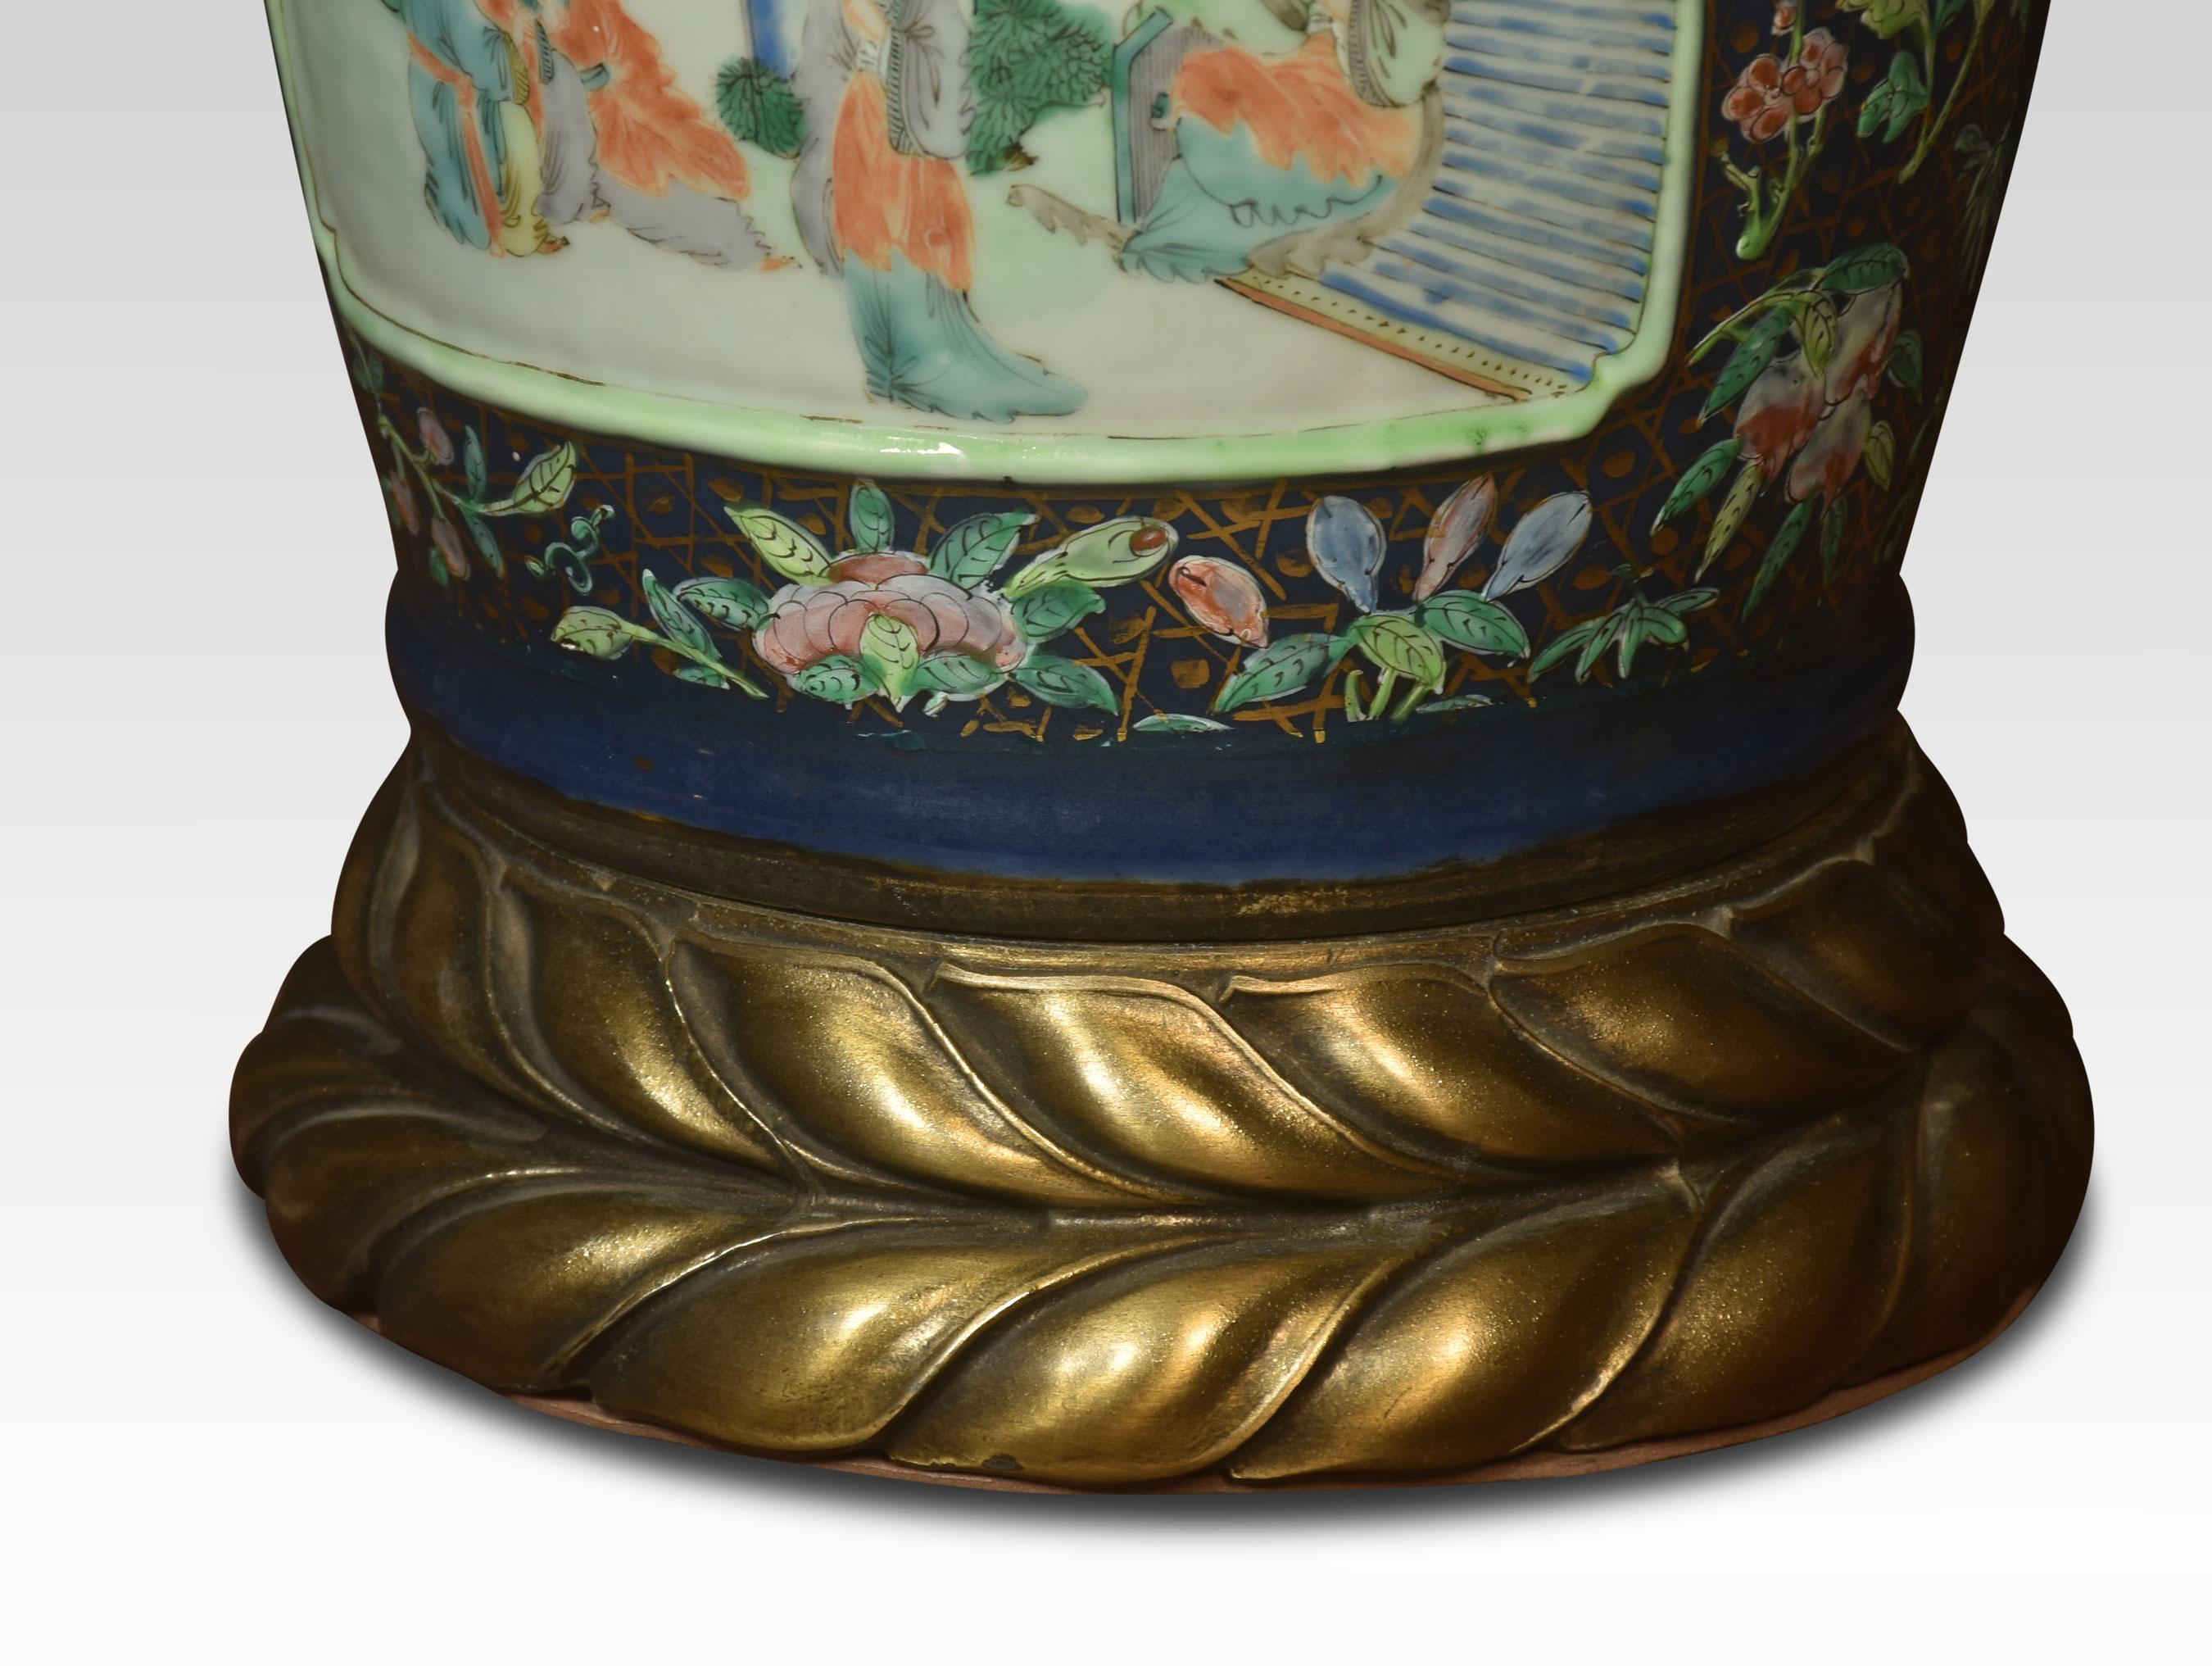 Vase aus chinesischem Porzellan Famille Verte, montiert als Lampe, die einen islamischen Markt darstellt, erhöht auf einem gedrehten Sockel.
Abmessungen
Höhe 22 Zoll
Breite 8 Zoll
Tiefe 8 Zoll